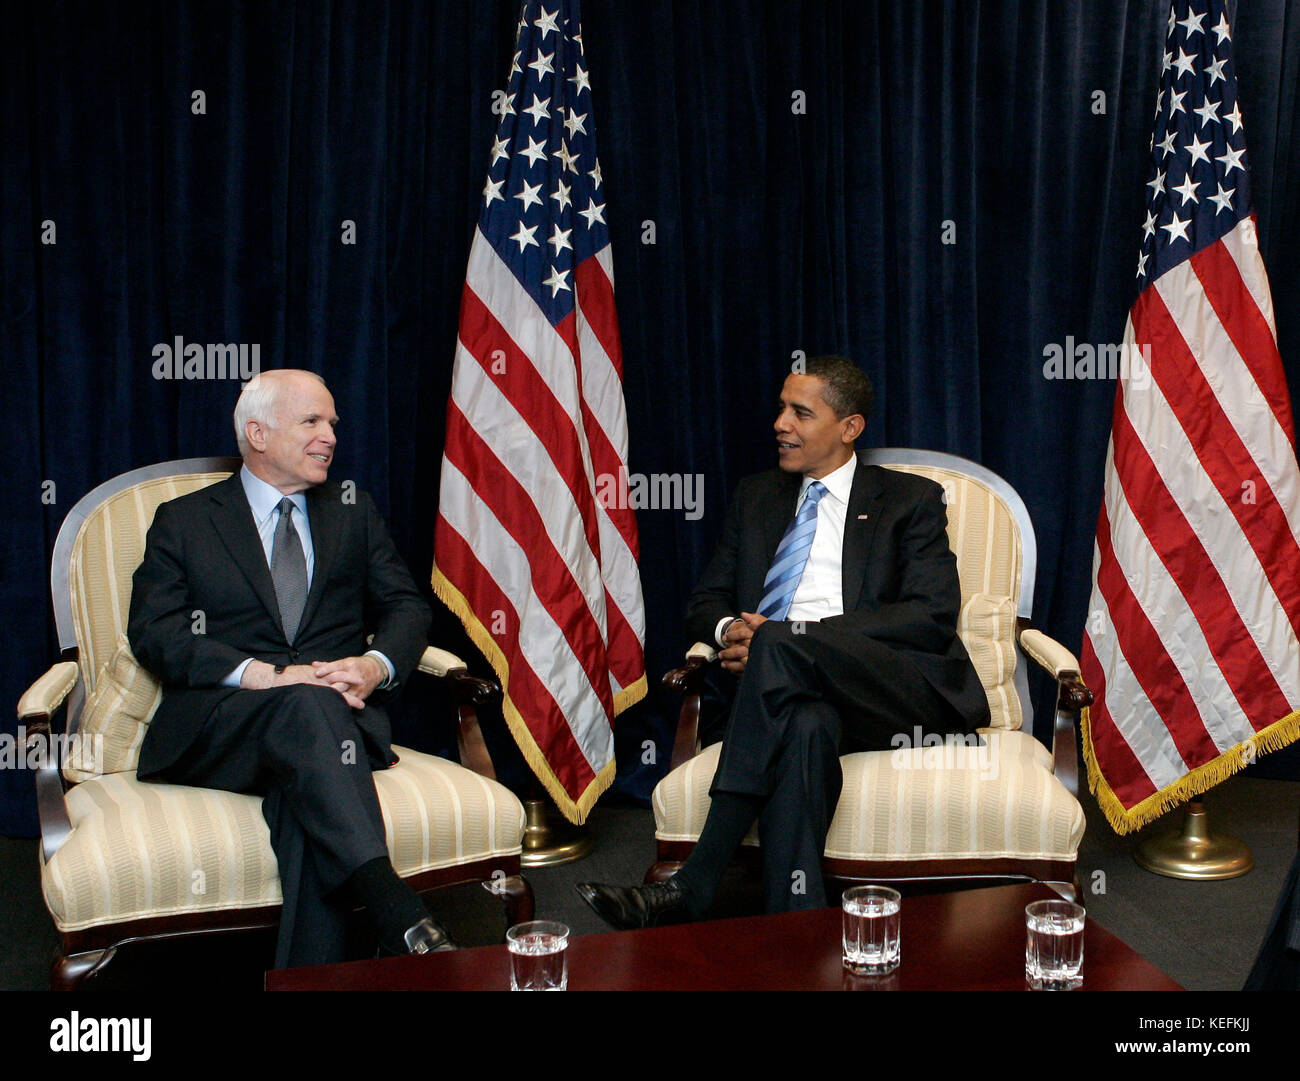 Chicago, IL - 17. November 2008 -- US-Präsident Barack Obama, rechts, trifft sich mit dem ehemaligen republikanischen Präsidentschaftskandidaten United States Senator John McCain (Republikaner von Arizona), links, am Montag, 17. November 2008, in Chicago, Illinois. .Credit: Frank Polich - Pool über CNP /MediaPunch Stockfoto